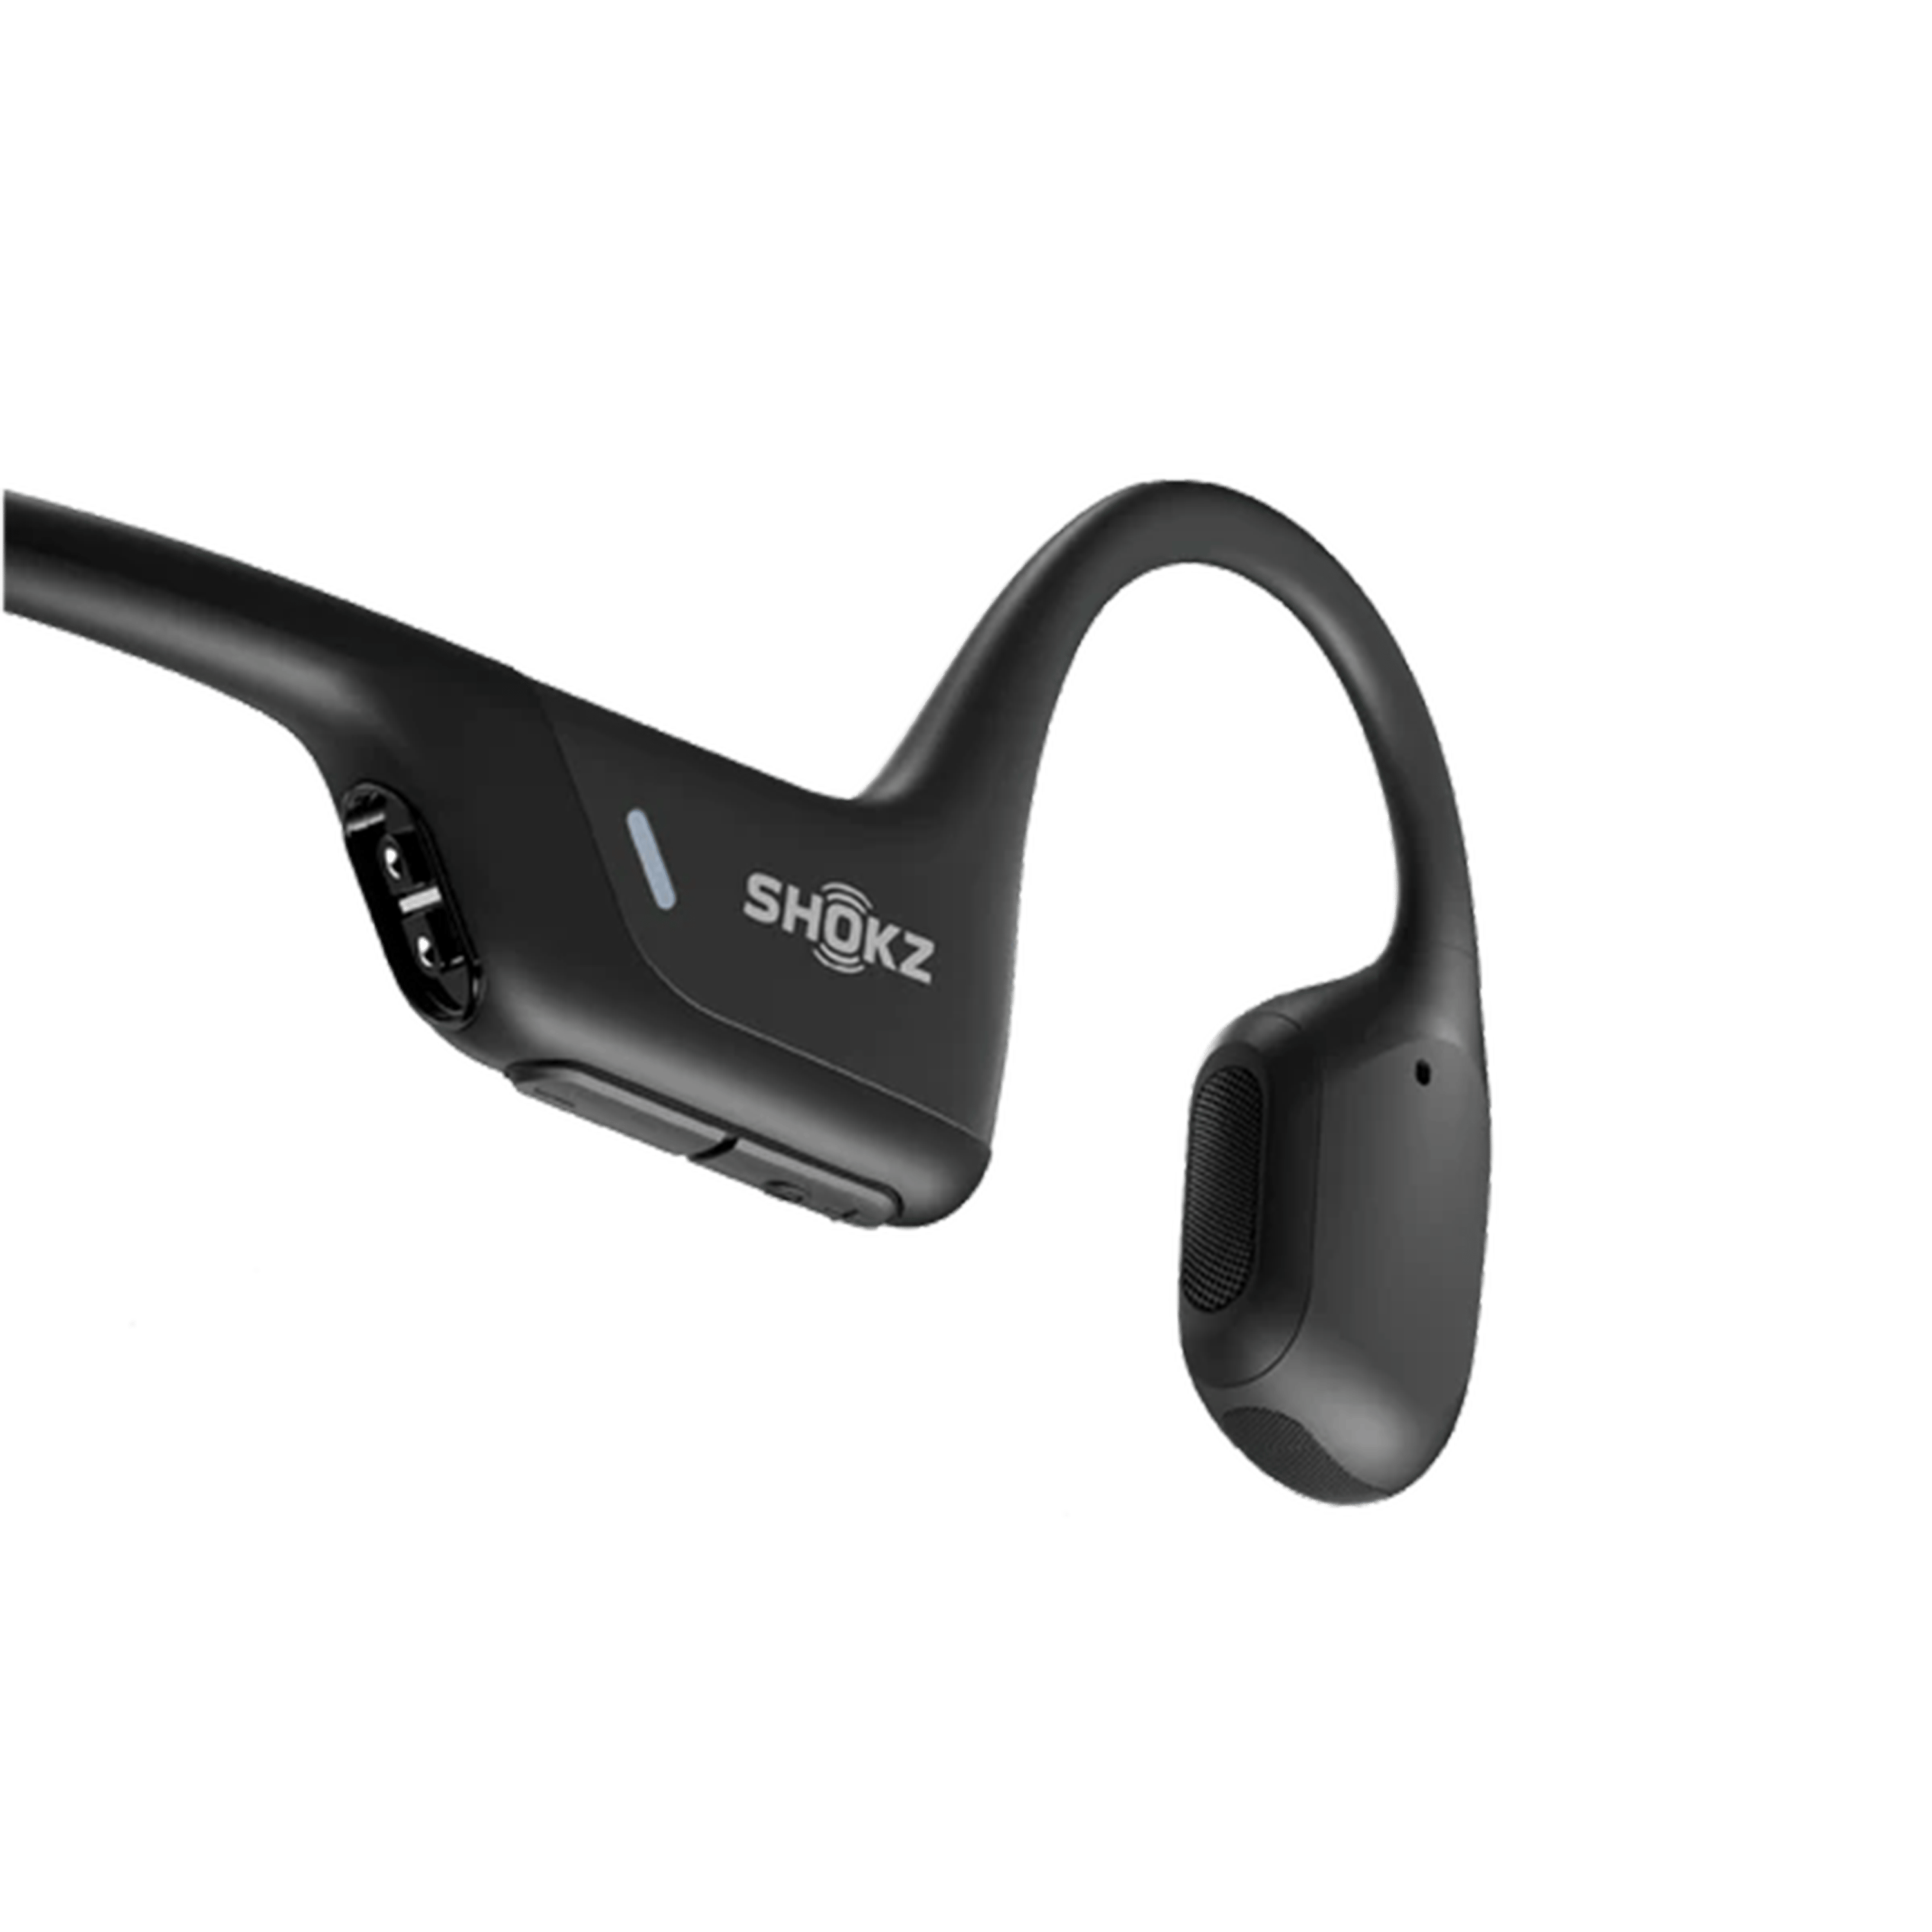 אוזניות עצם אלחוטיות Shockz OpenRun Pro IP55 - צבע שחור שנתיים אחריות ע